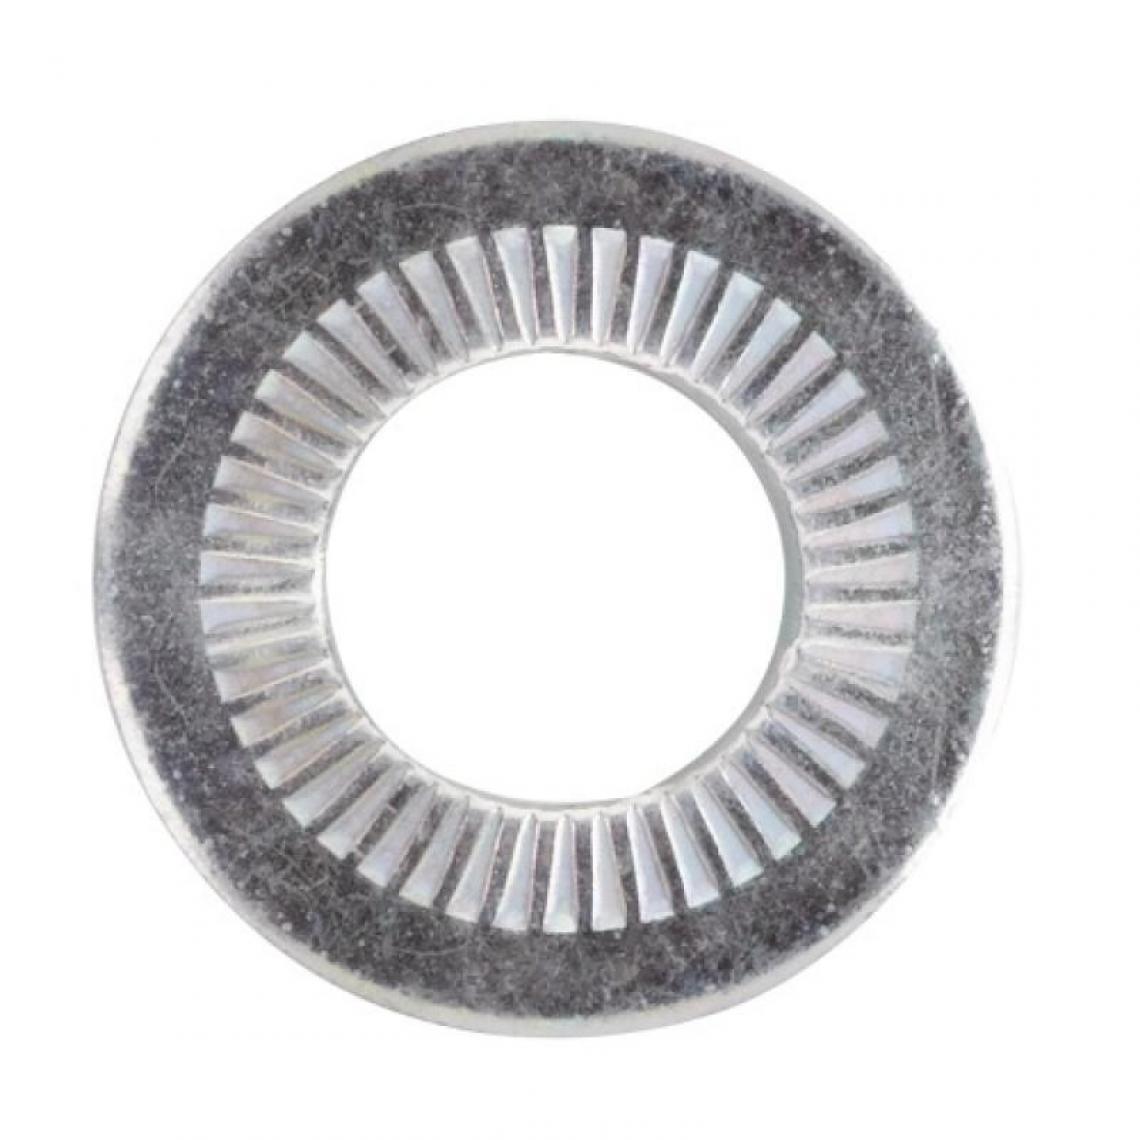 Negoce-Plus - Rondelle contact zingué blanc, pour vis diamètre 14 mm, sachet de 200 rondelles - Charnière de fenetre